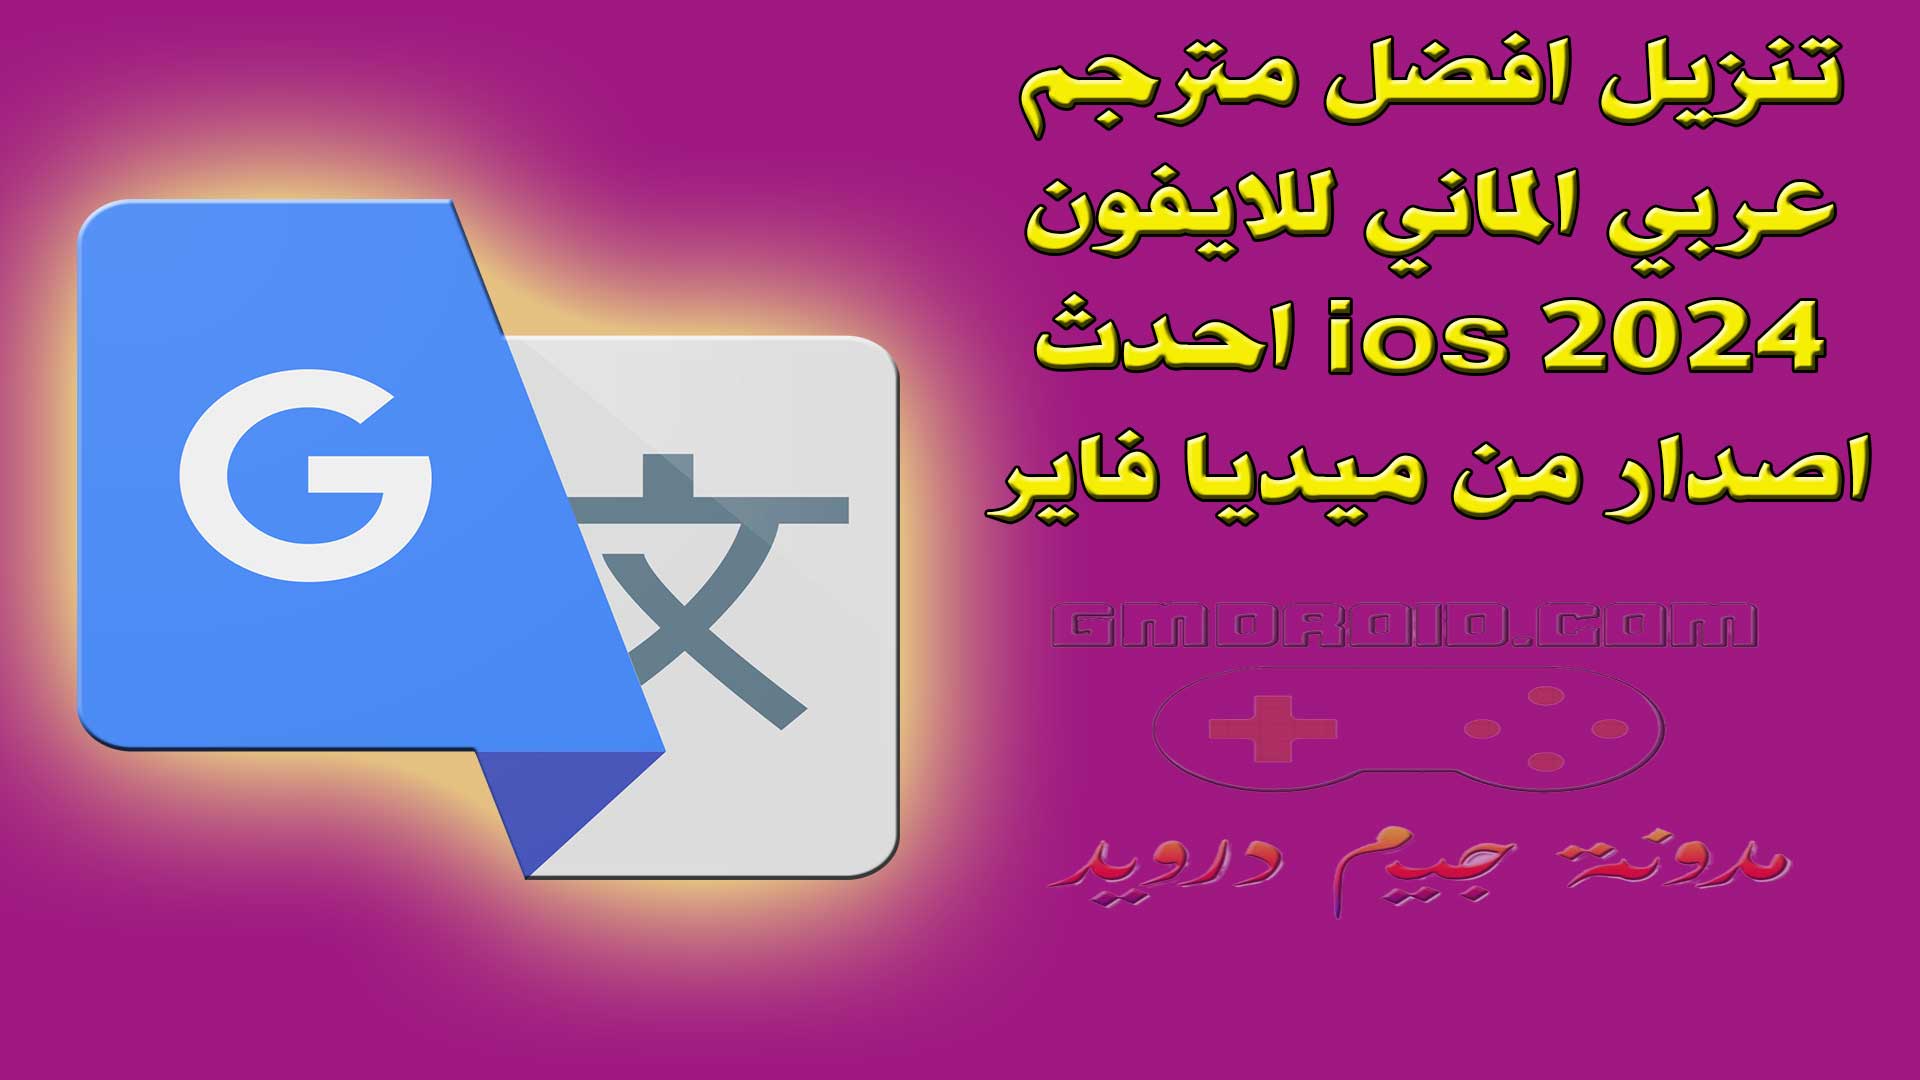 تنزيل افضل مترجم عربي الماني للايفون ios 2024 احدث اصدار من ميديا فاير